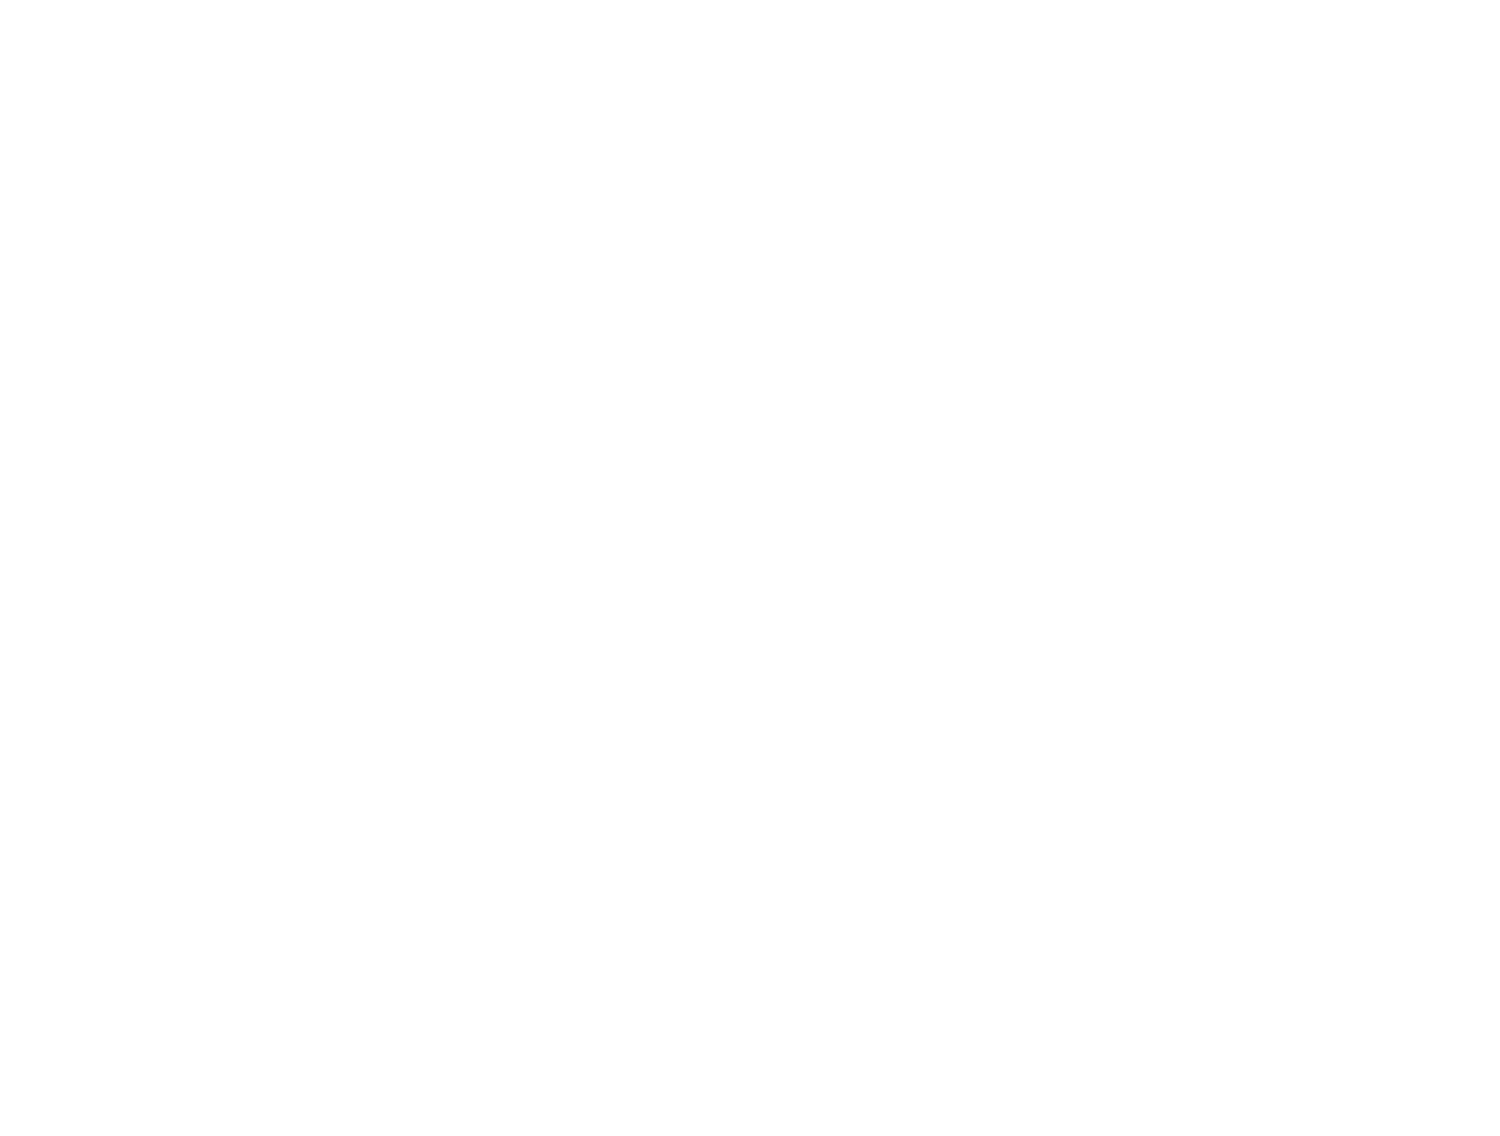 call me lu